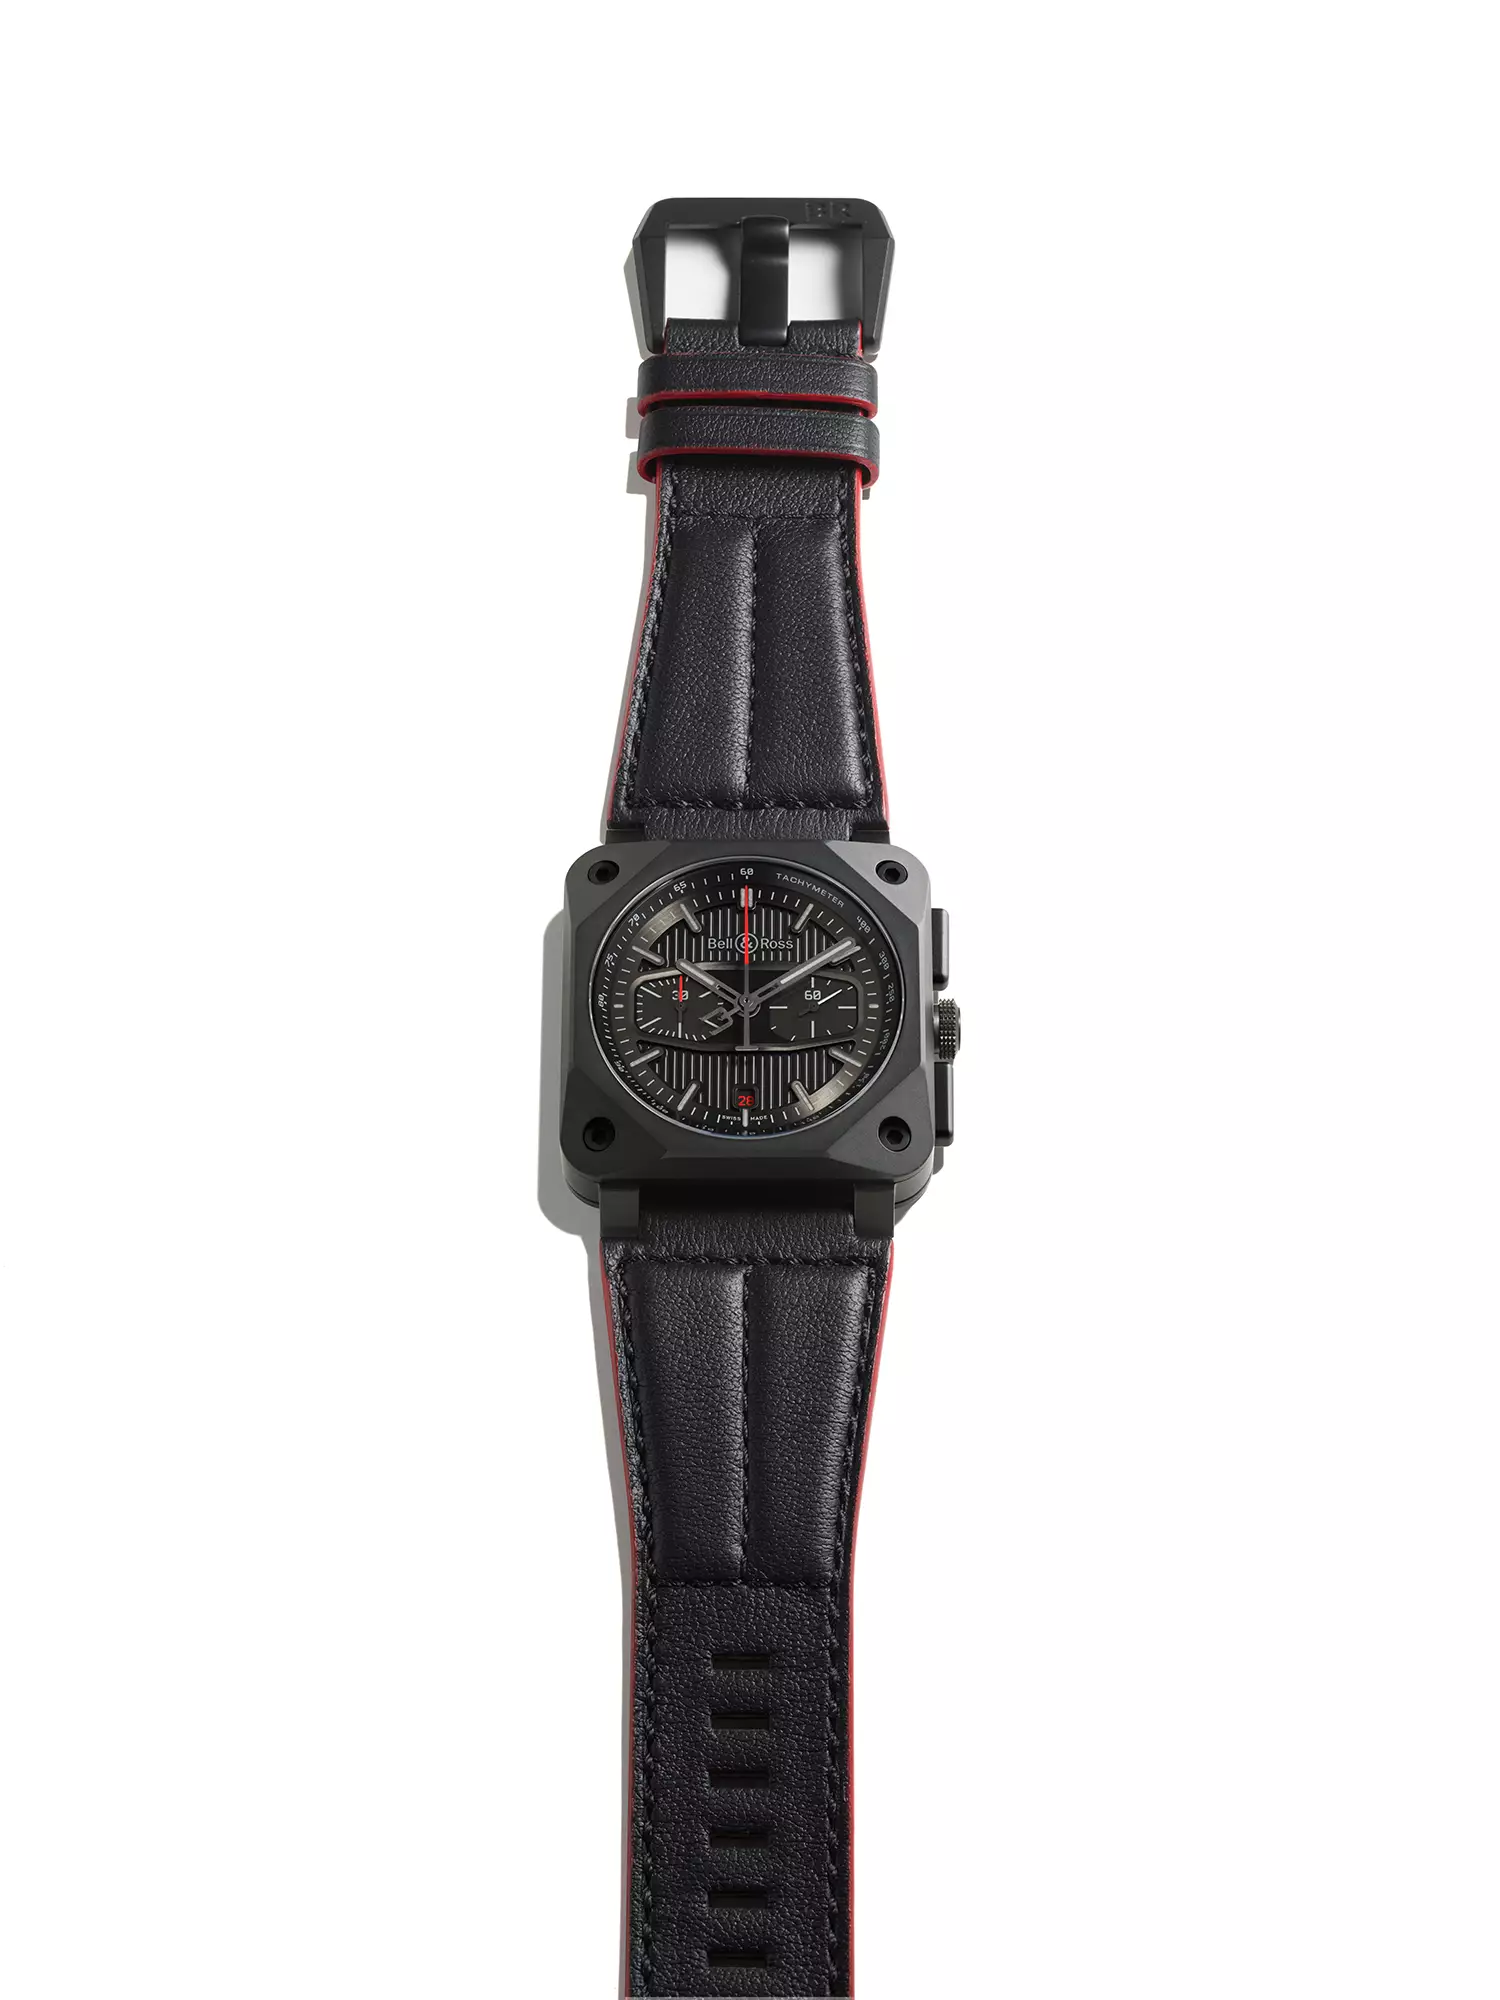 Bell & Ross dévoile la magnifique BR 03-94 BLACKTRACK, un chronographe né de la vitesse et du style